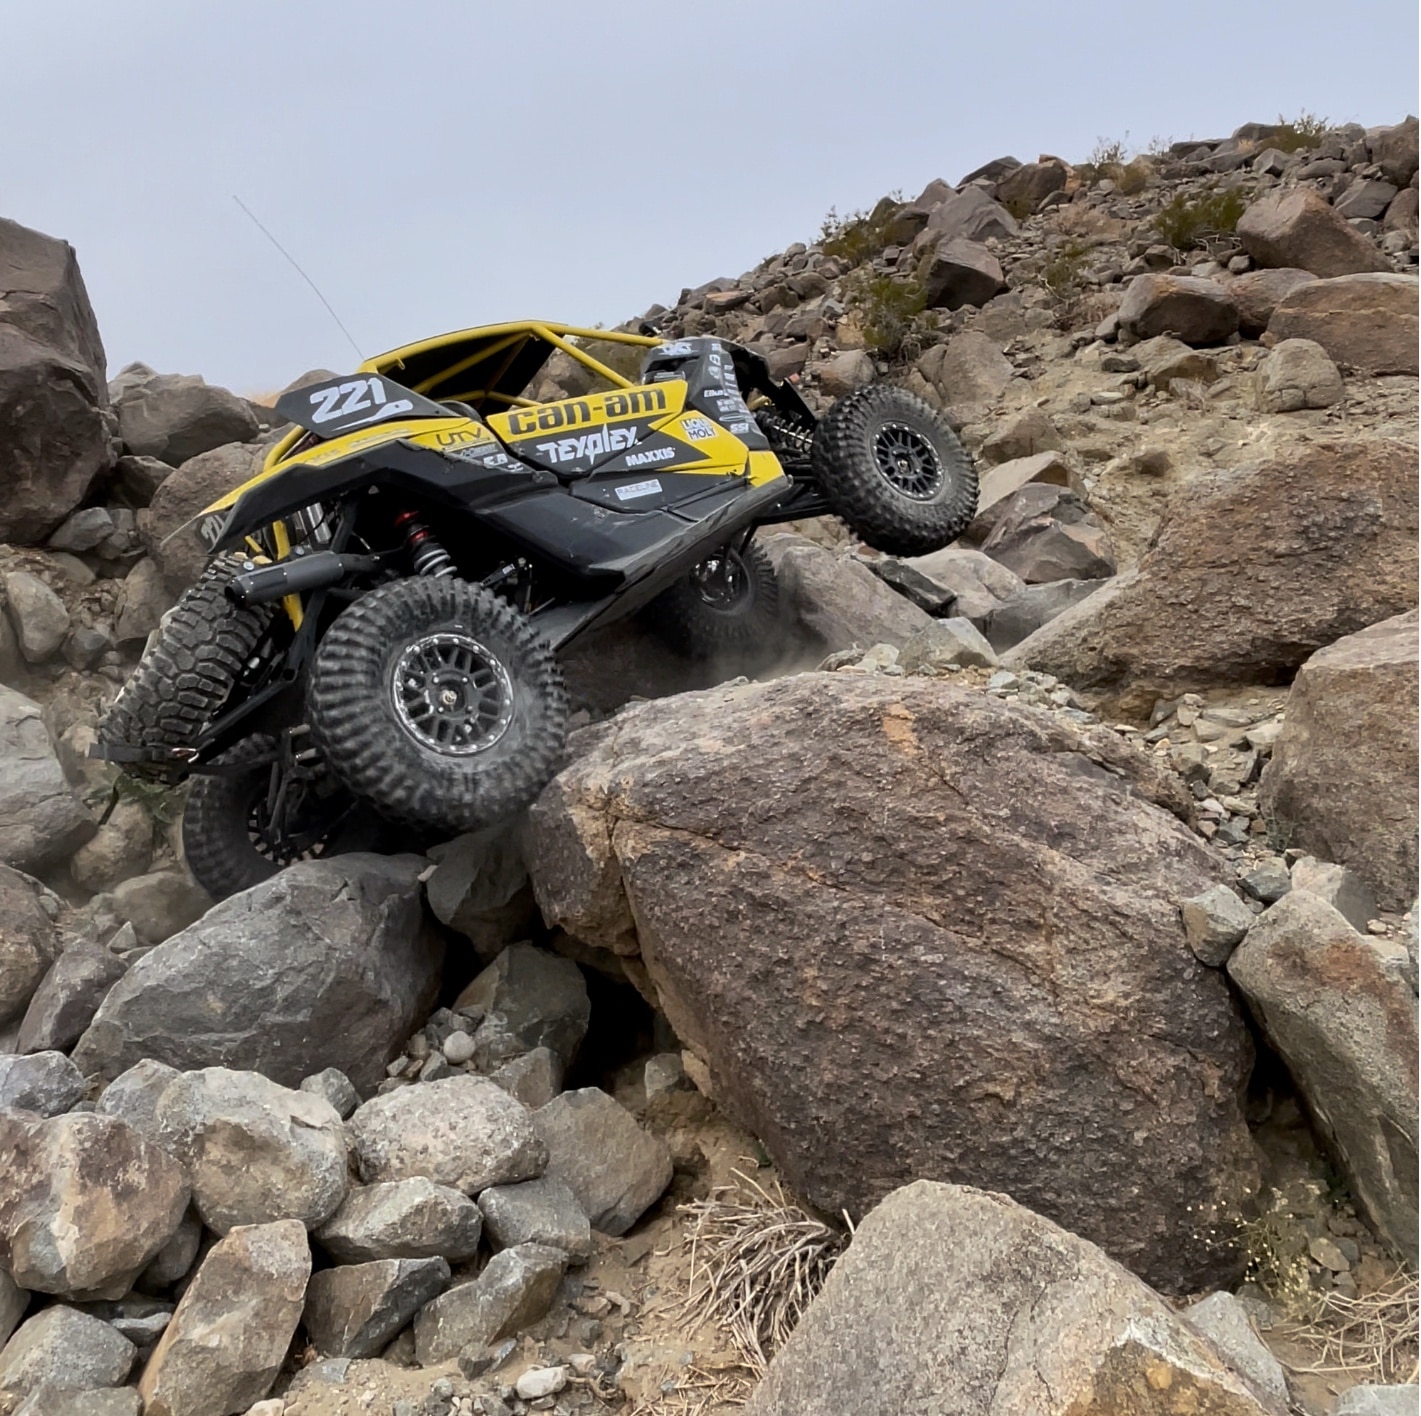 Vehículo side-by-side Can-Am personalizado amarillo y negro inclinado hacia la izquierda subiendo rocas grandes